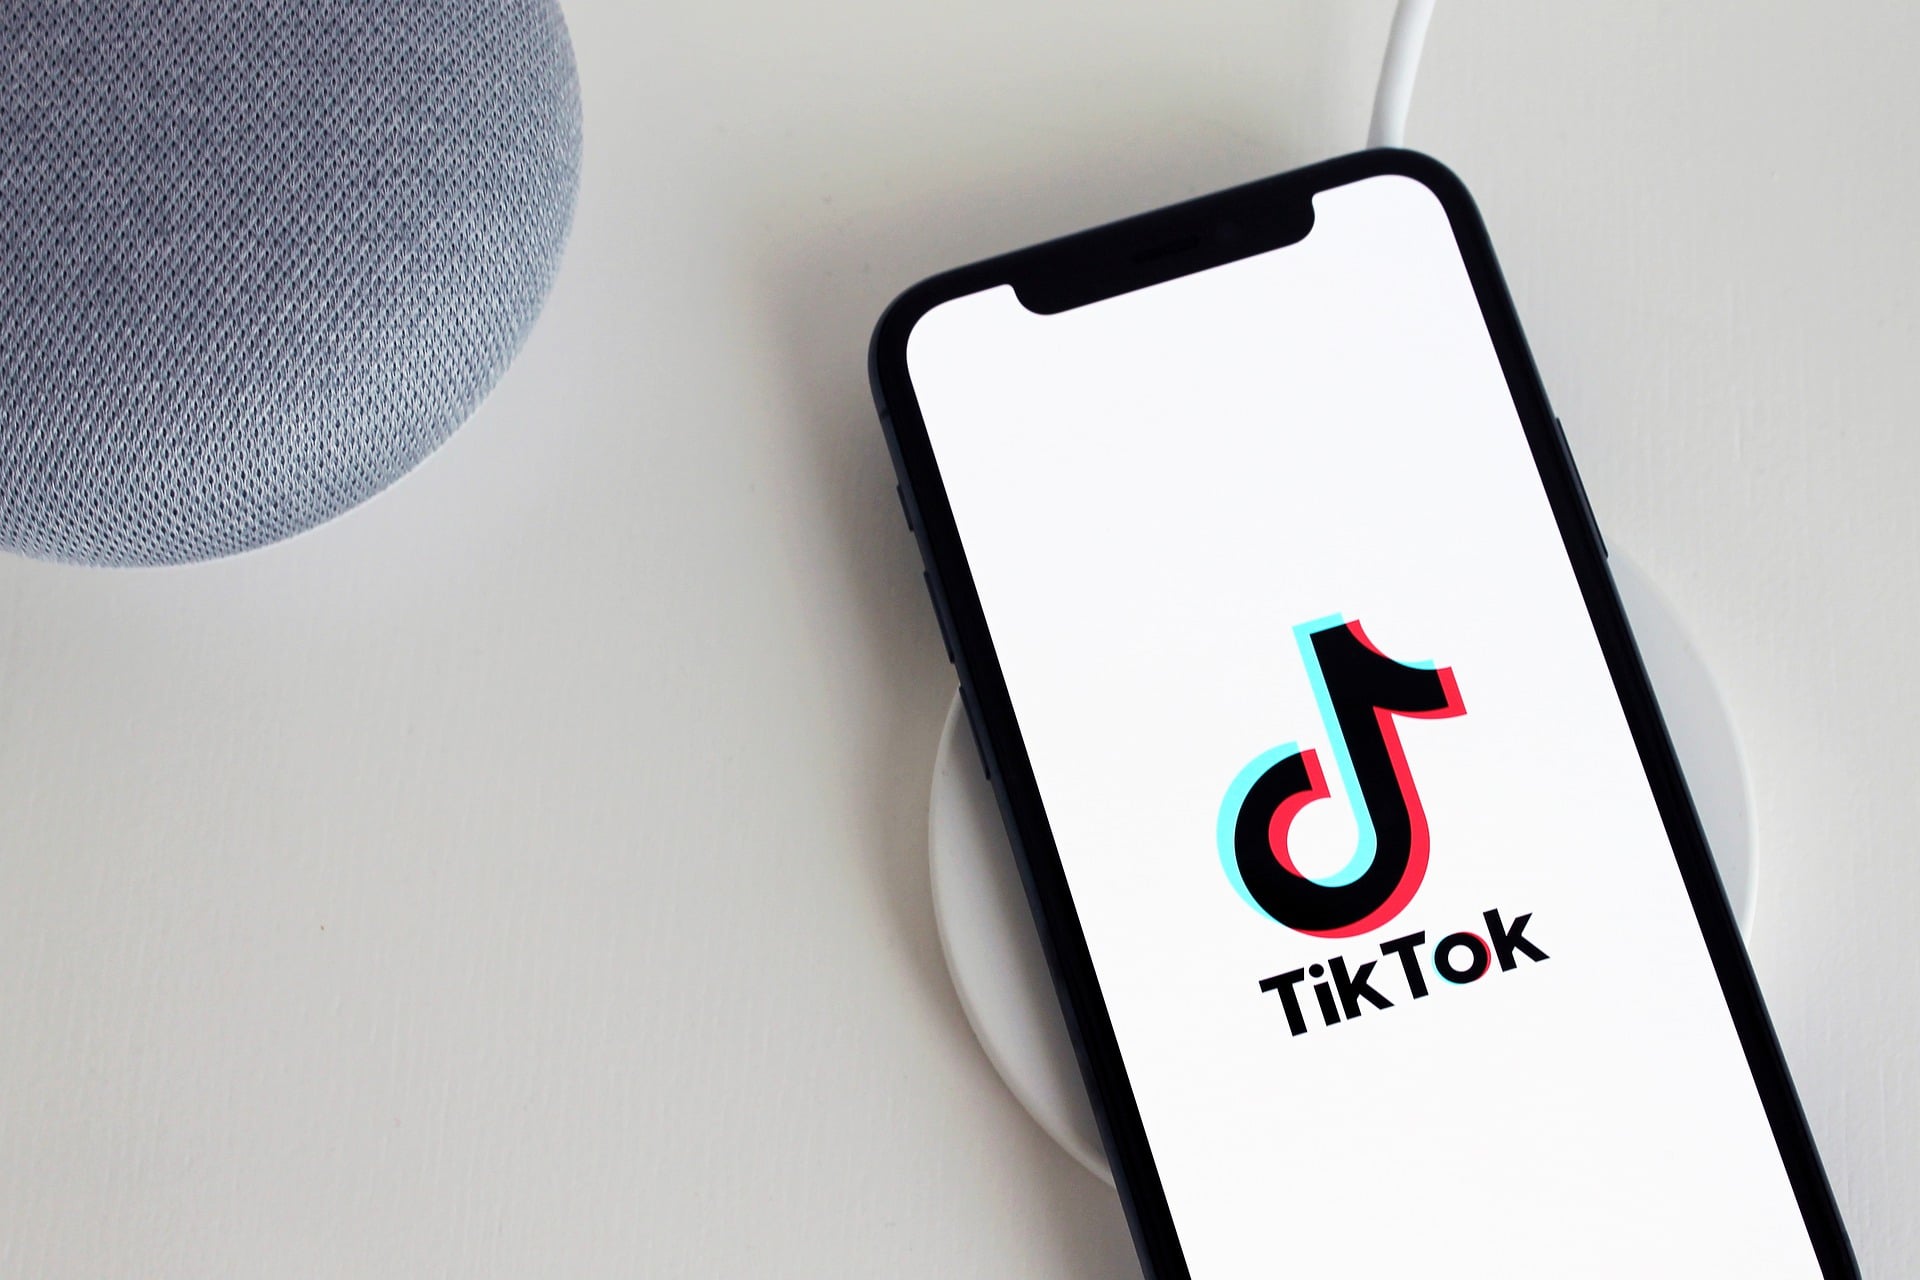 6 Músicas virais do TikTok pra você conhecer